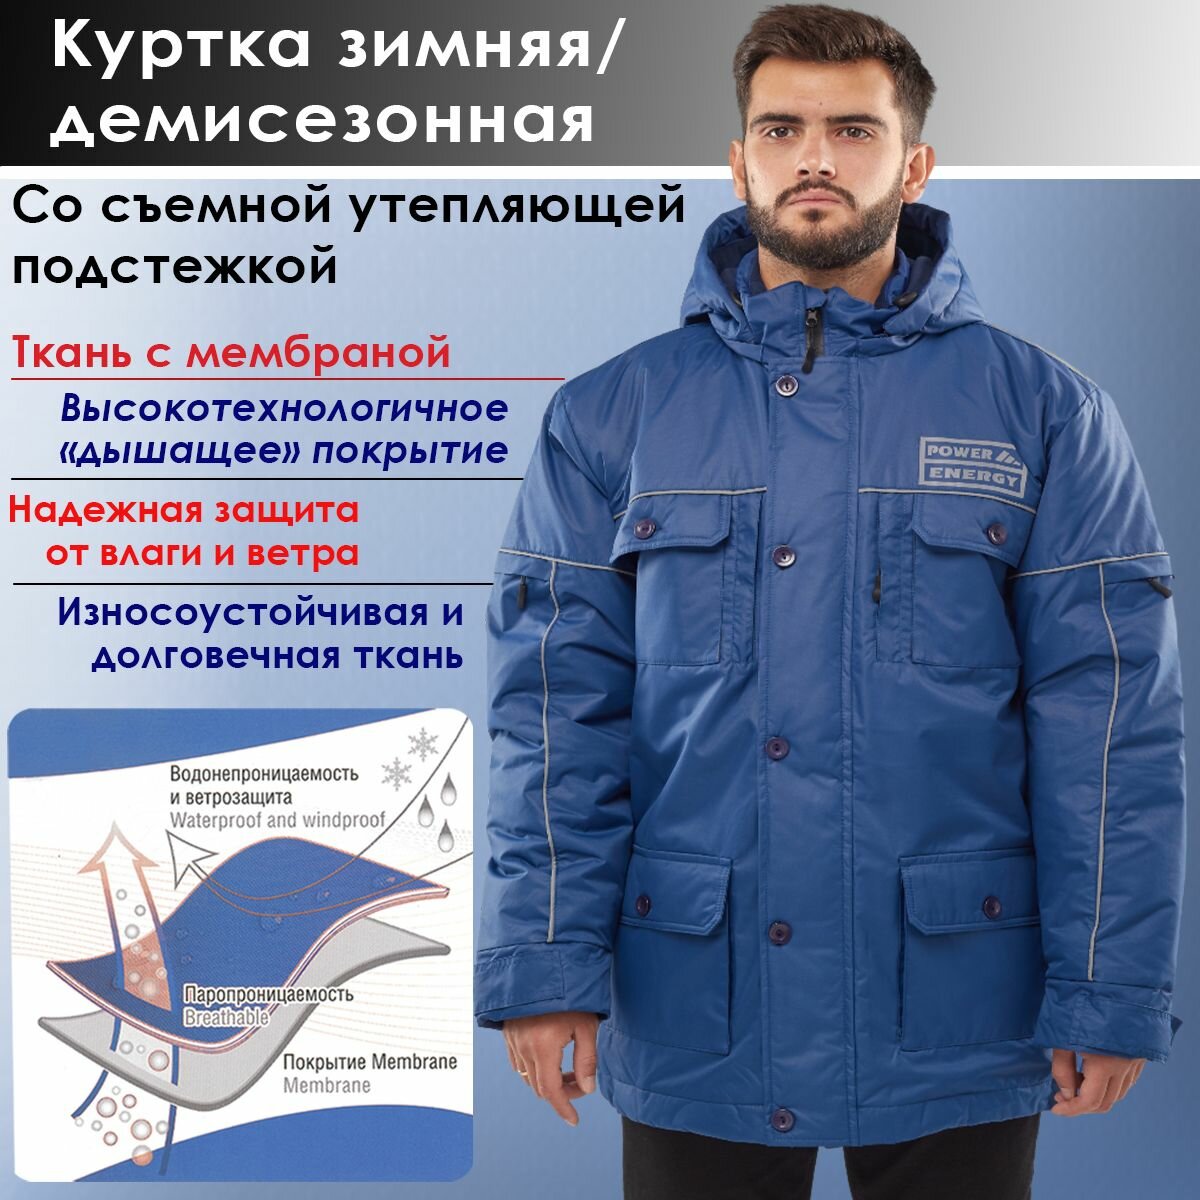 Куртка зимняя / демисезонная со съемной утепляющей подстежкой Синяя